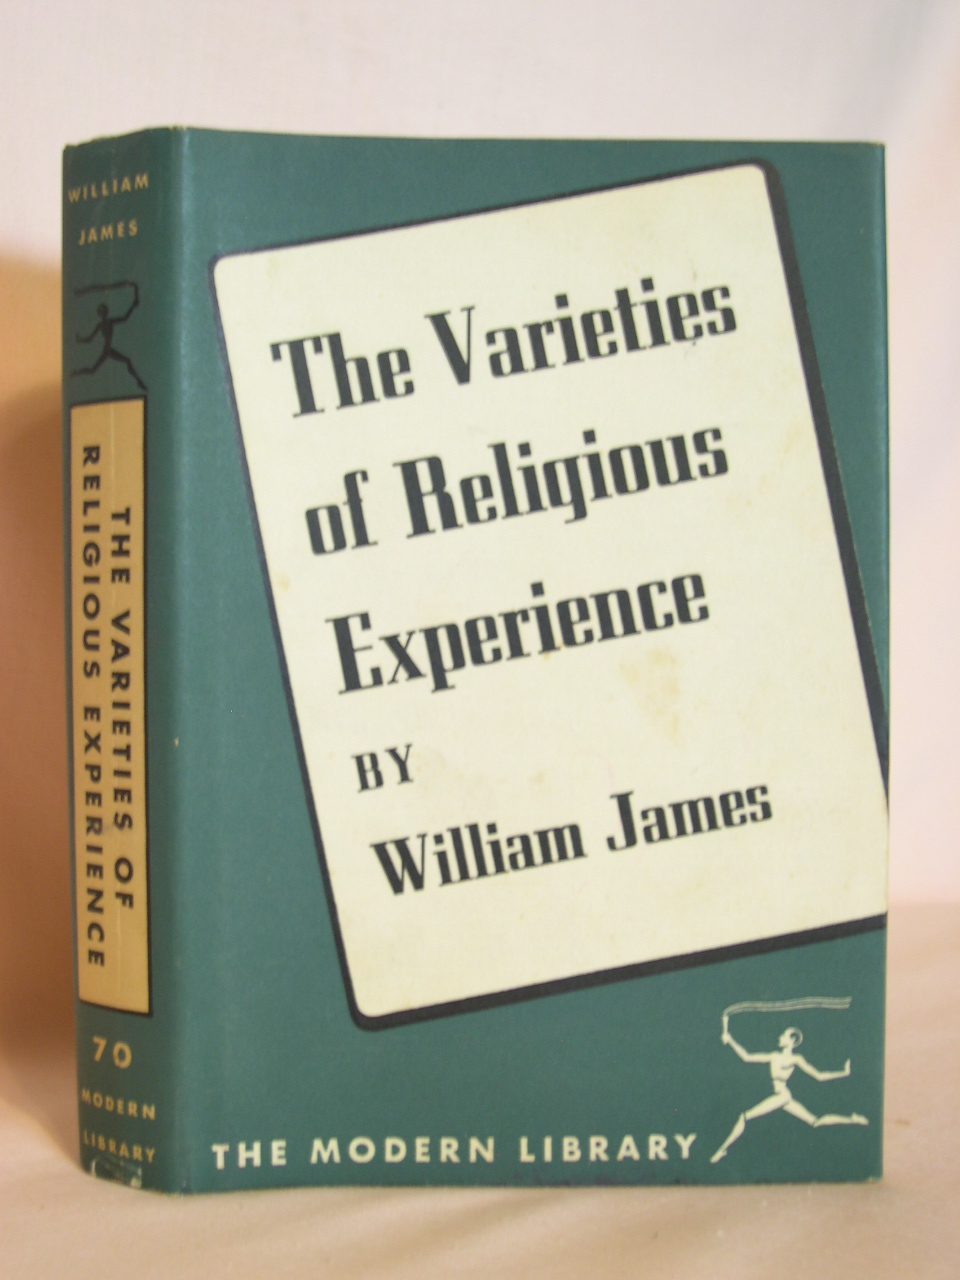 ガラ空き 𝓖𝓪𝓻𝓪𝓐𝓴𝓲 ナナウエくんの読んでる本 調べてみたらウィリアム ジェームズ著 宗教経験の諸相 のようで ジェームズ ガン的には スーパー を作るうえで元ネタにしたと公言していた本だったので そこか と思った T